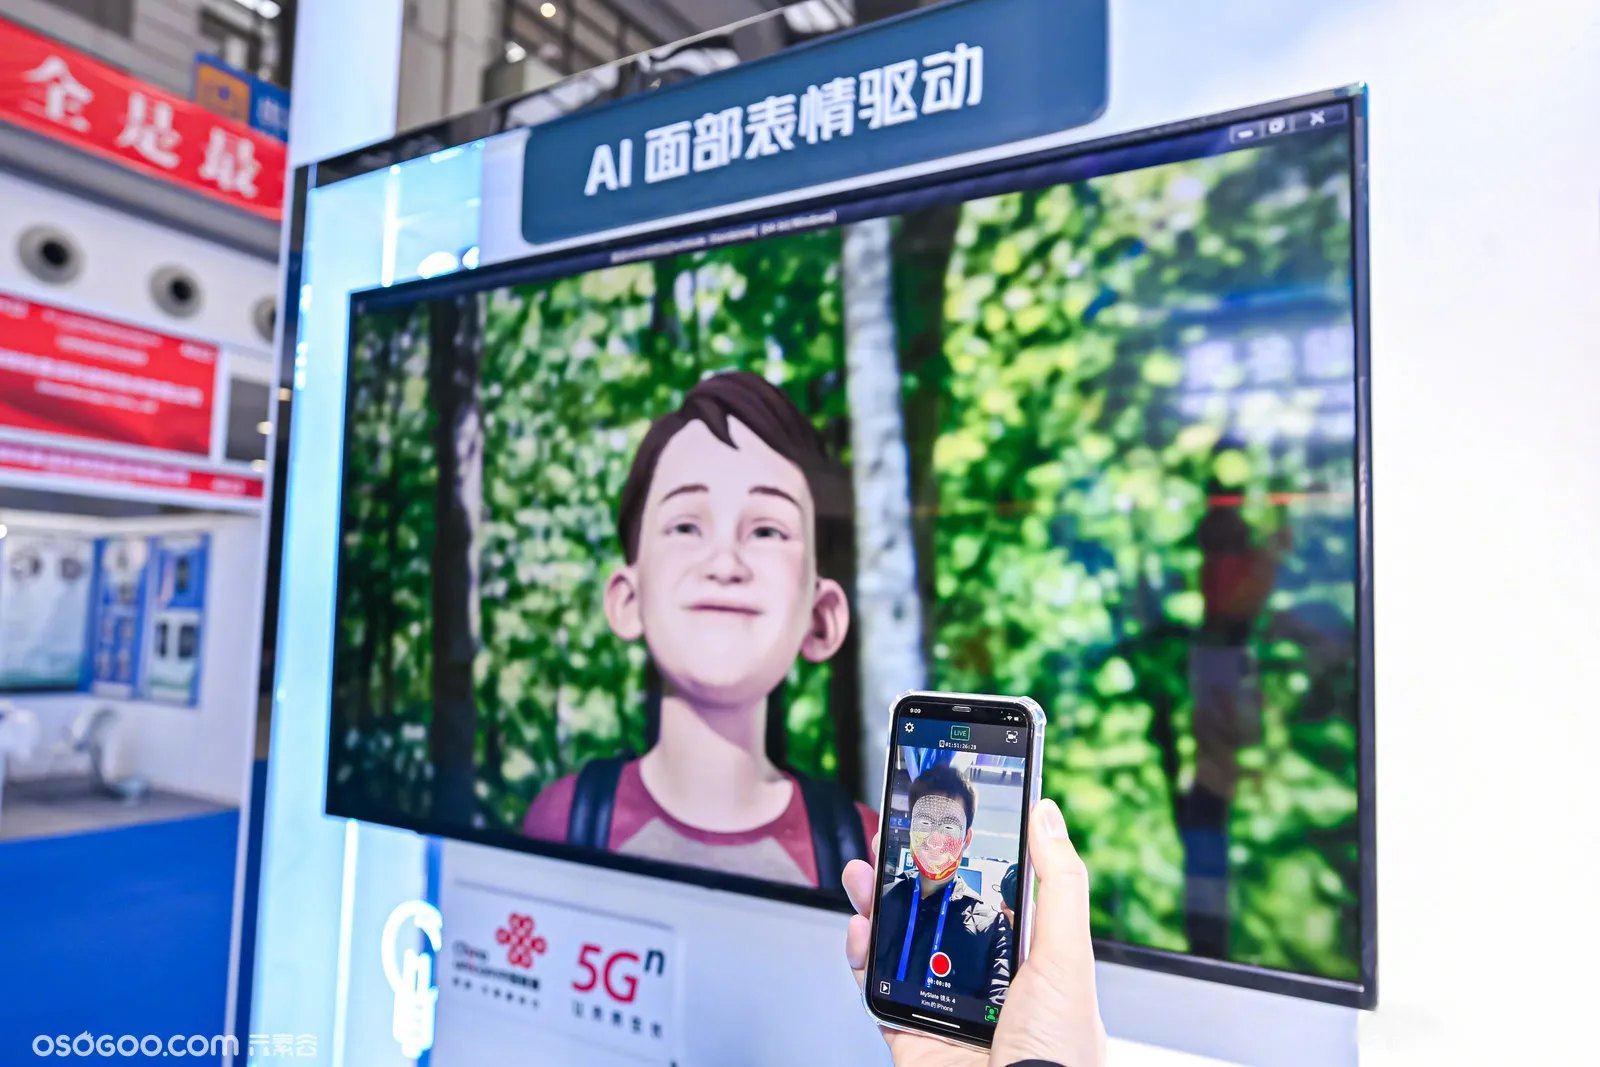 联通5G 数智未来 第23届高交会中国联通展位